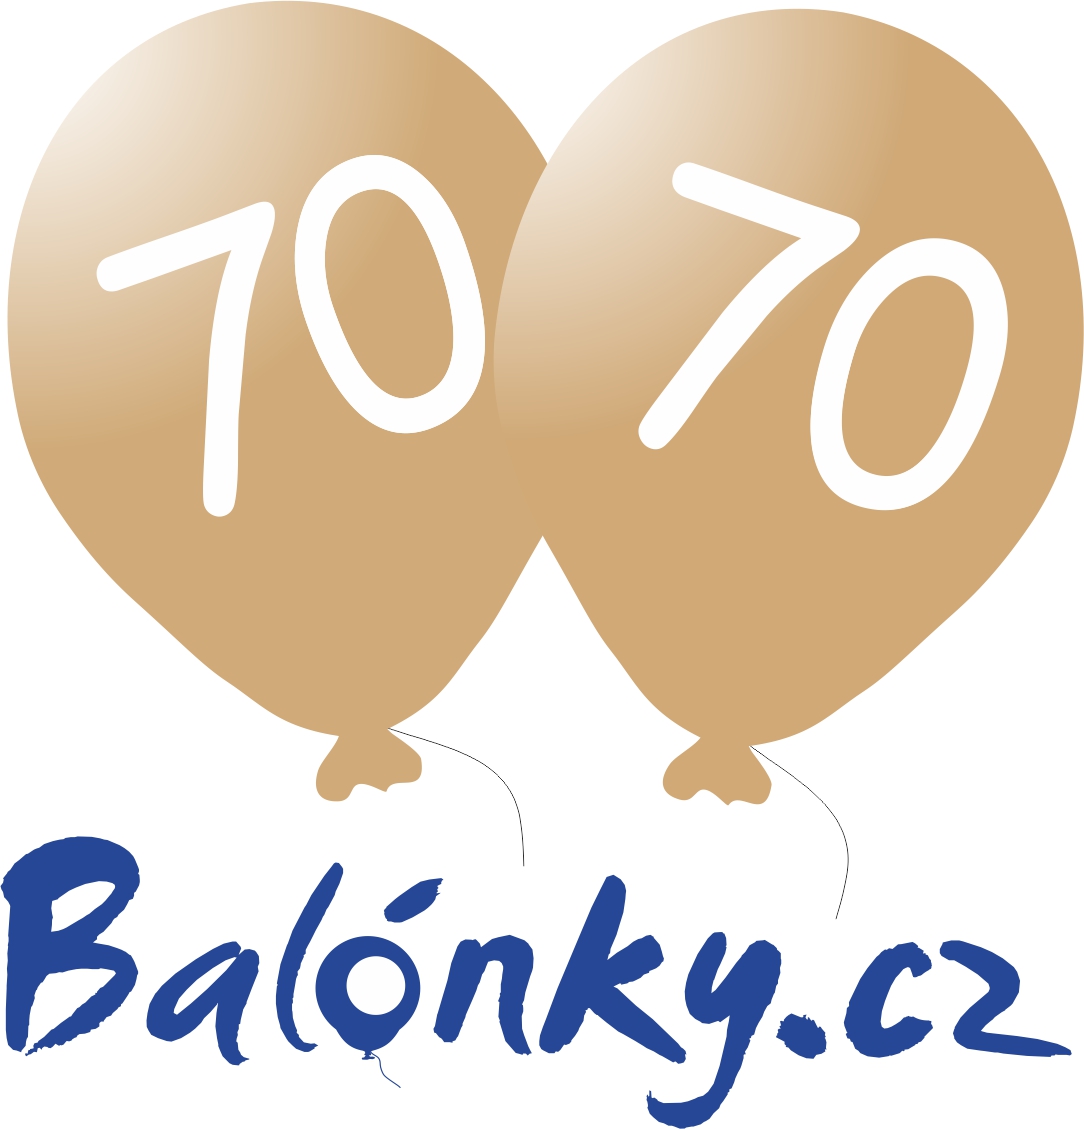 Narozeninové balónky 70 zlaté